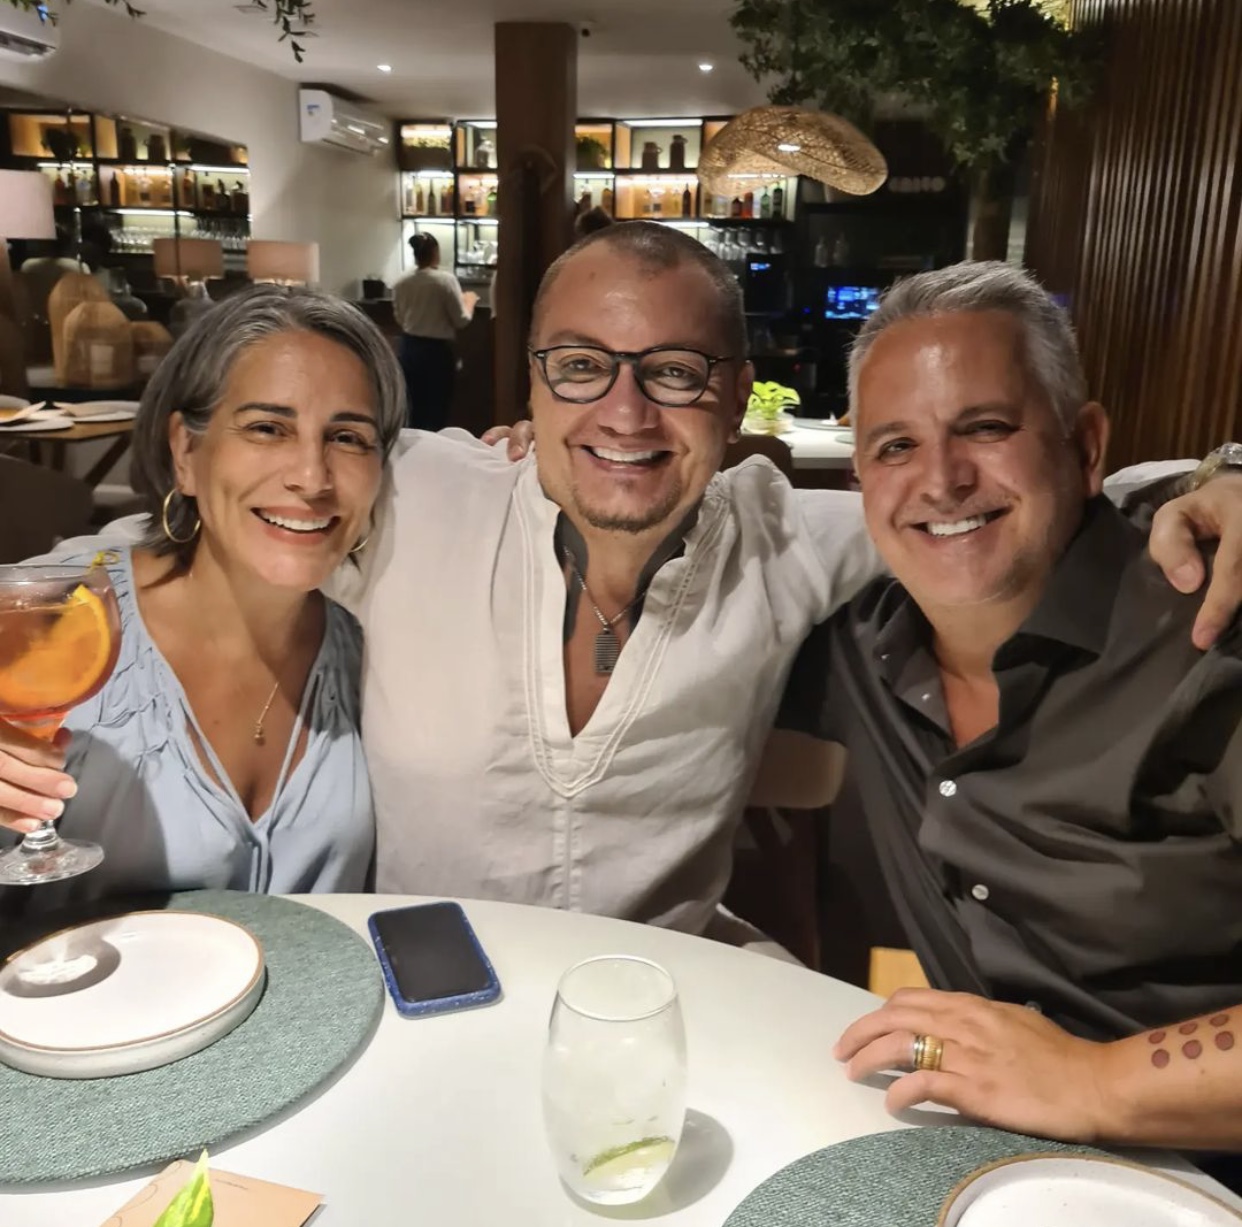 Glória Pires e Orlando Morais desembarcam em Salvador e jantam com amigos em hotel no Rio Vermelho 